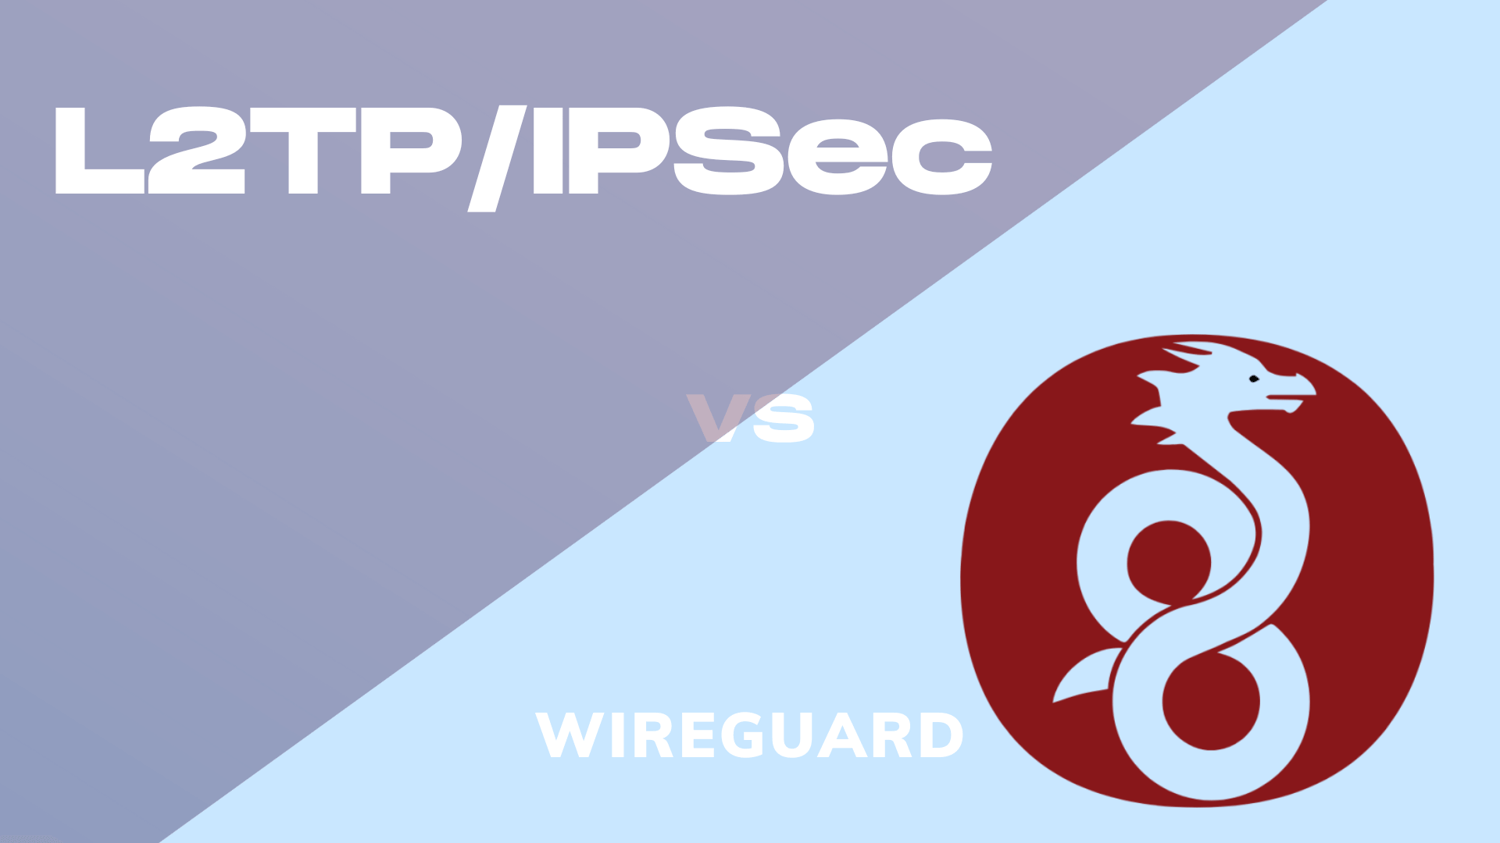 wireguard vs l2tp/ipsec